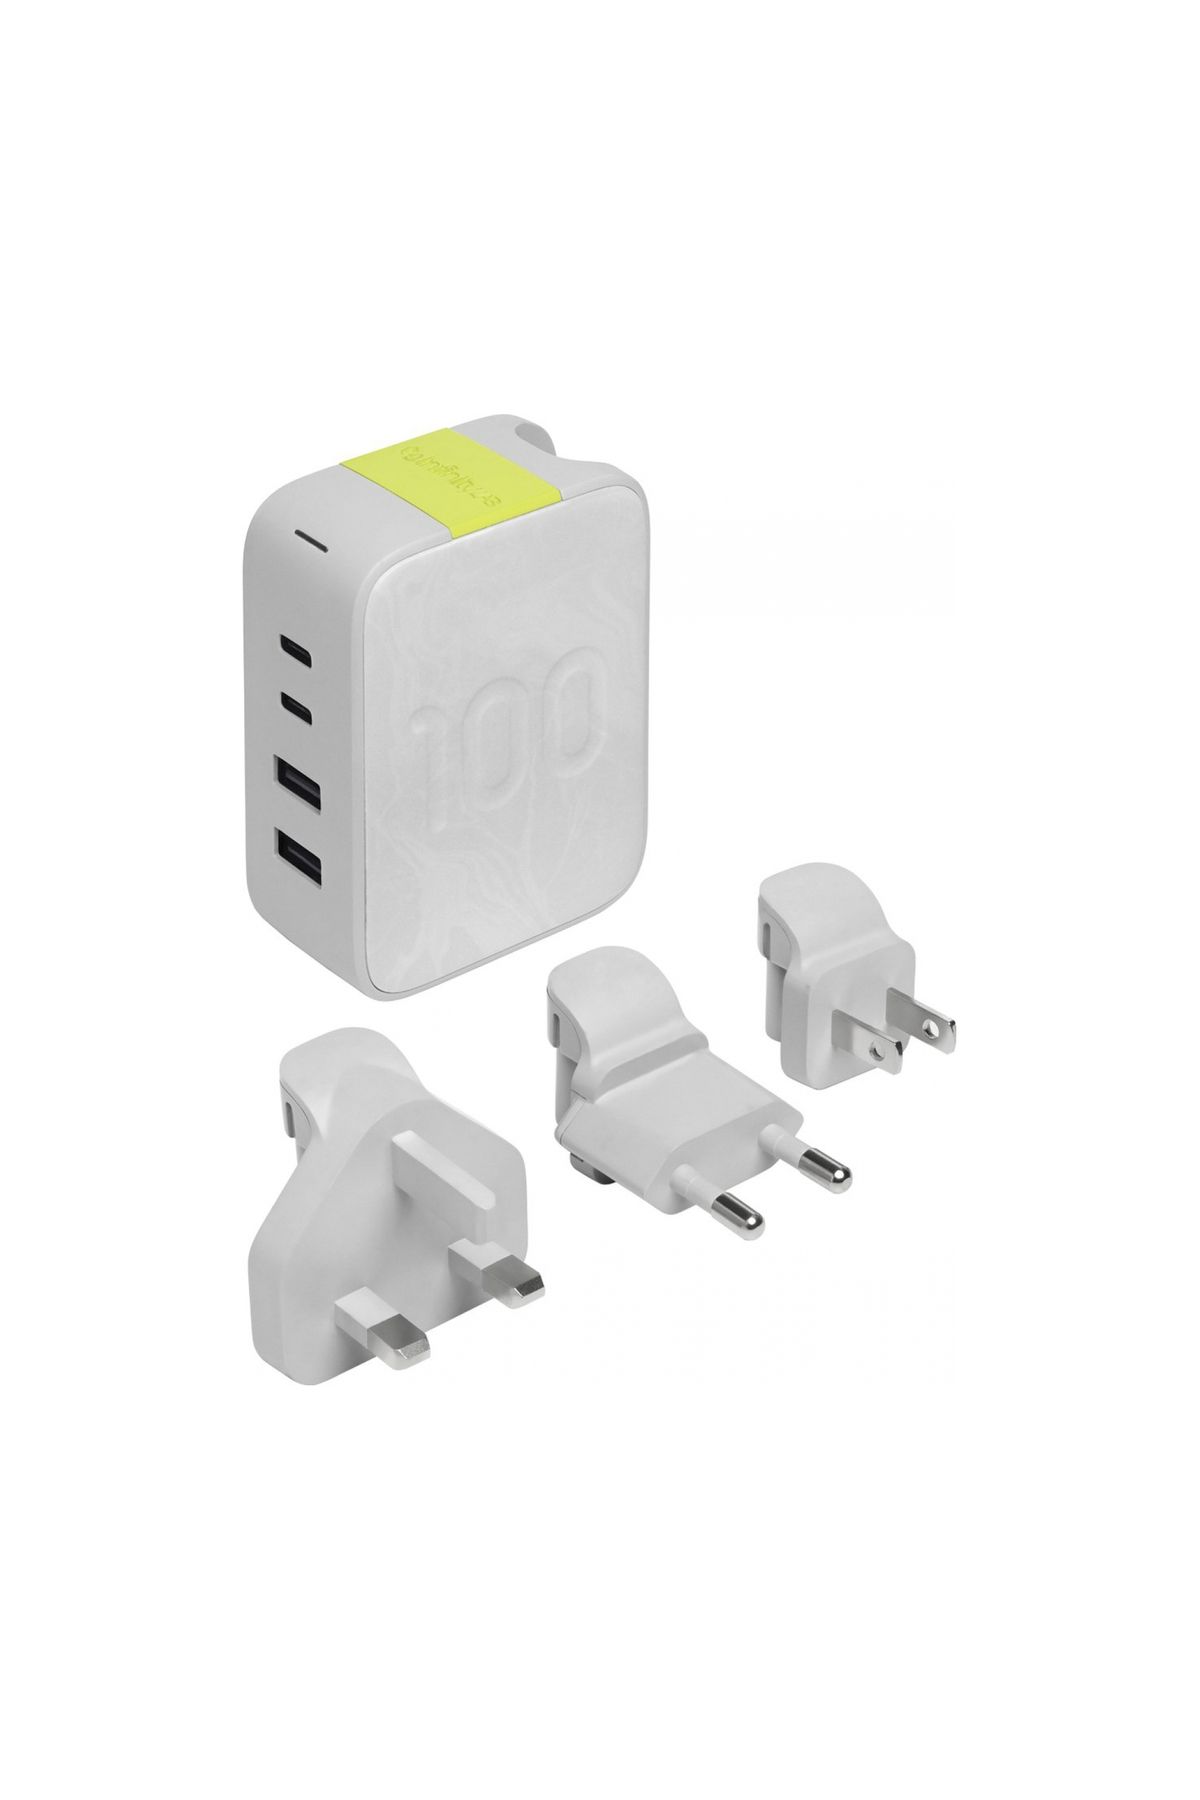 Infinity Lab InstantCharger 100W 4 USB Şarj Aleti Beyaz